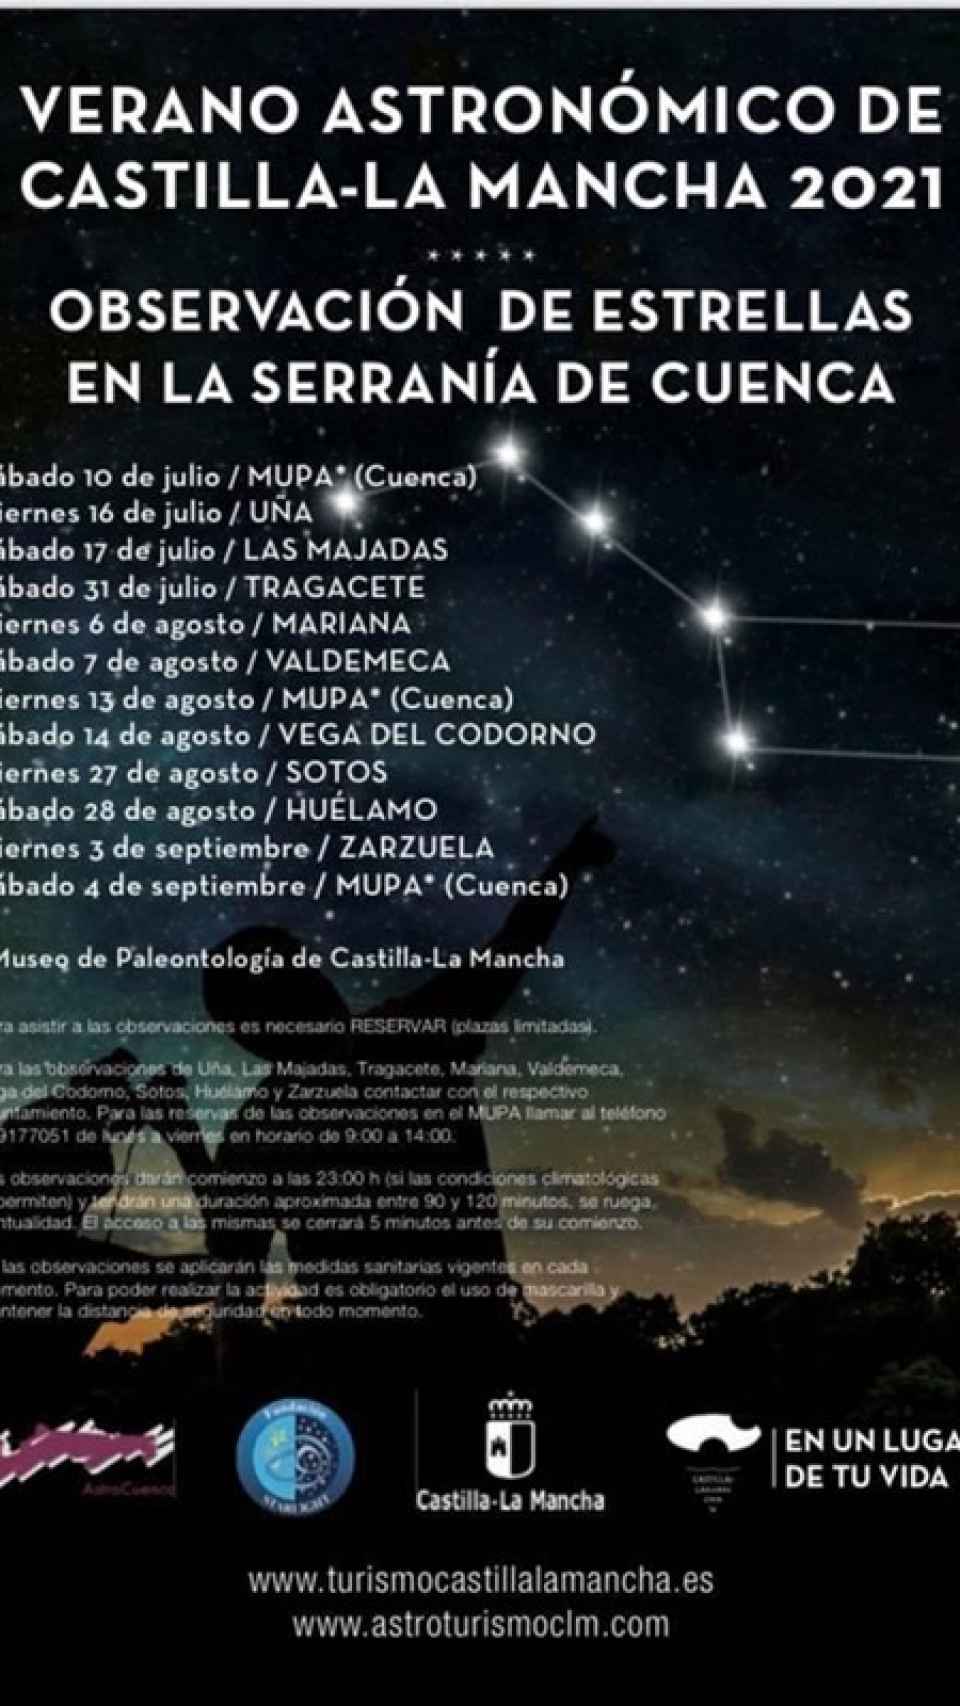 Veranos Astronómicos de Castilla-La Mancha 2021